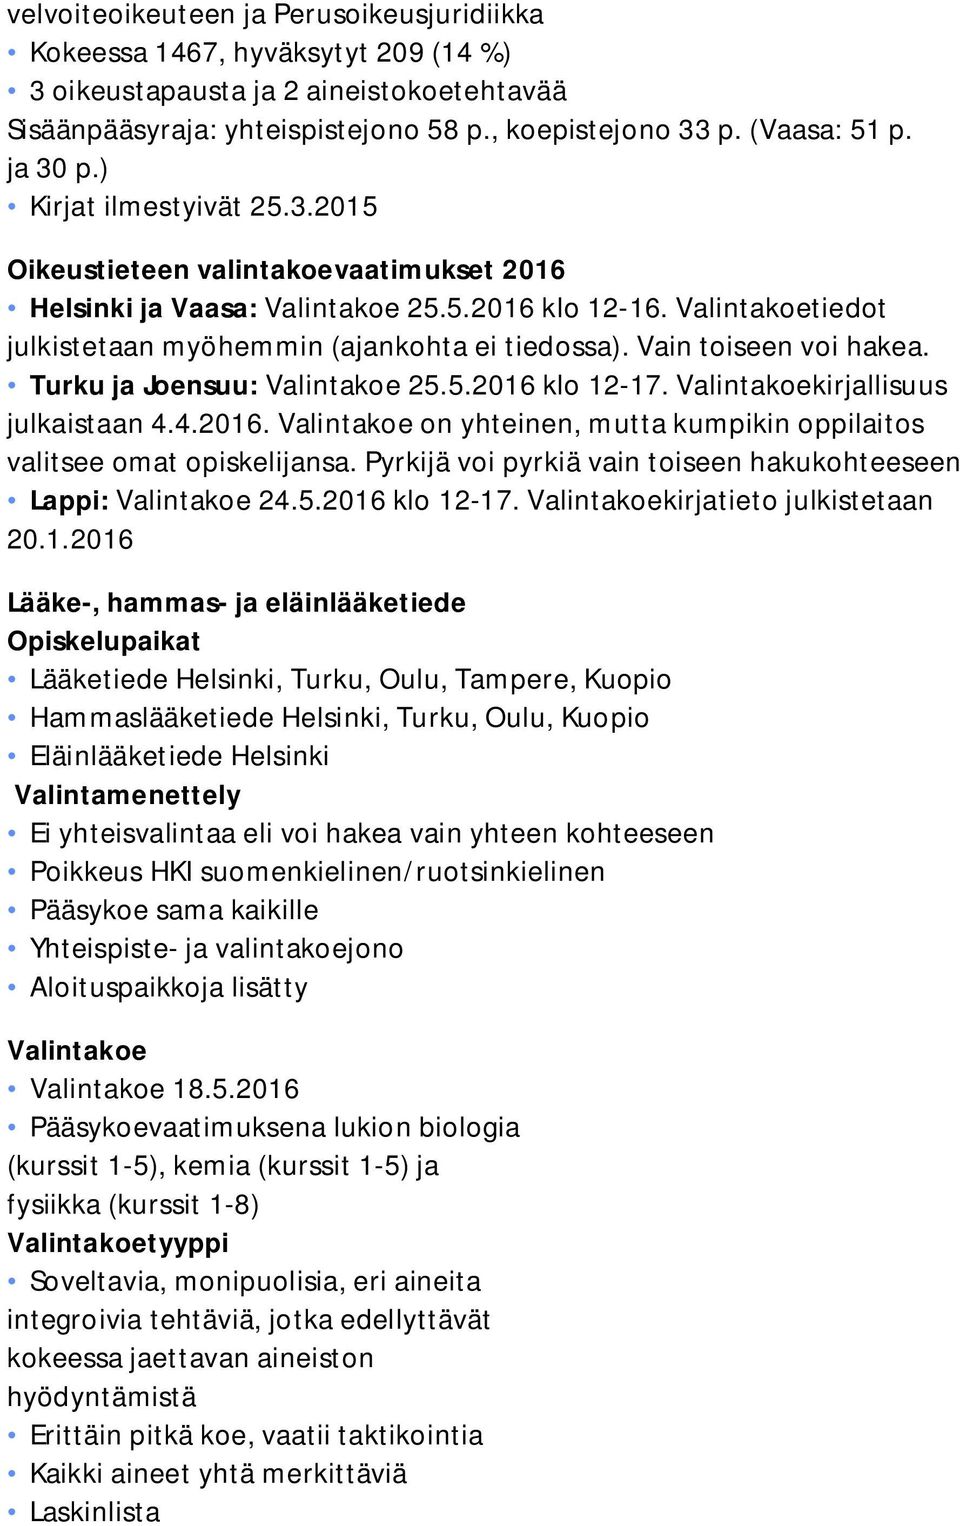 Vain toiseen voi hakea. Turku ja Joensuu: Valintakoe 25.5.2016 klo 12-17. Valintakoekirjallisuus julkaistaan 4.4.2016. Valintakoe on yhteinen, mutta kumpikin oppilaitos valitsee omat opiskelijansa.